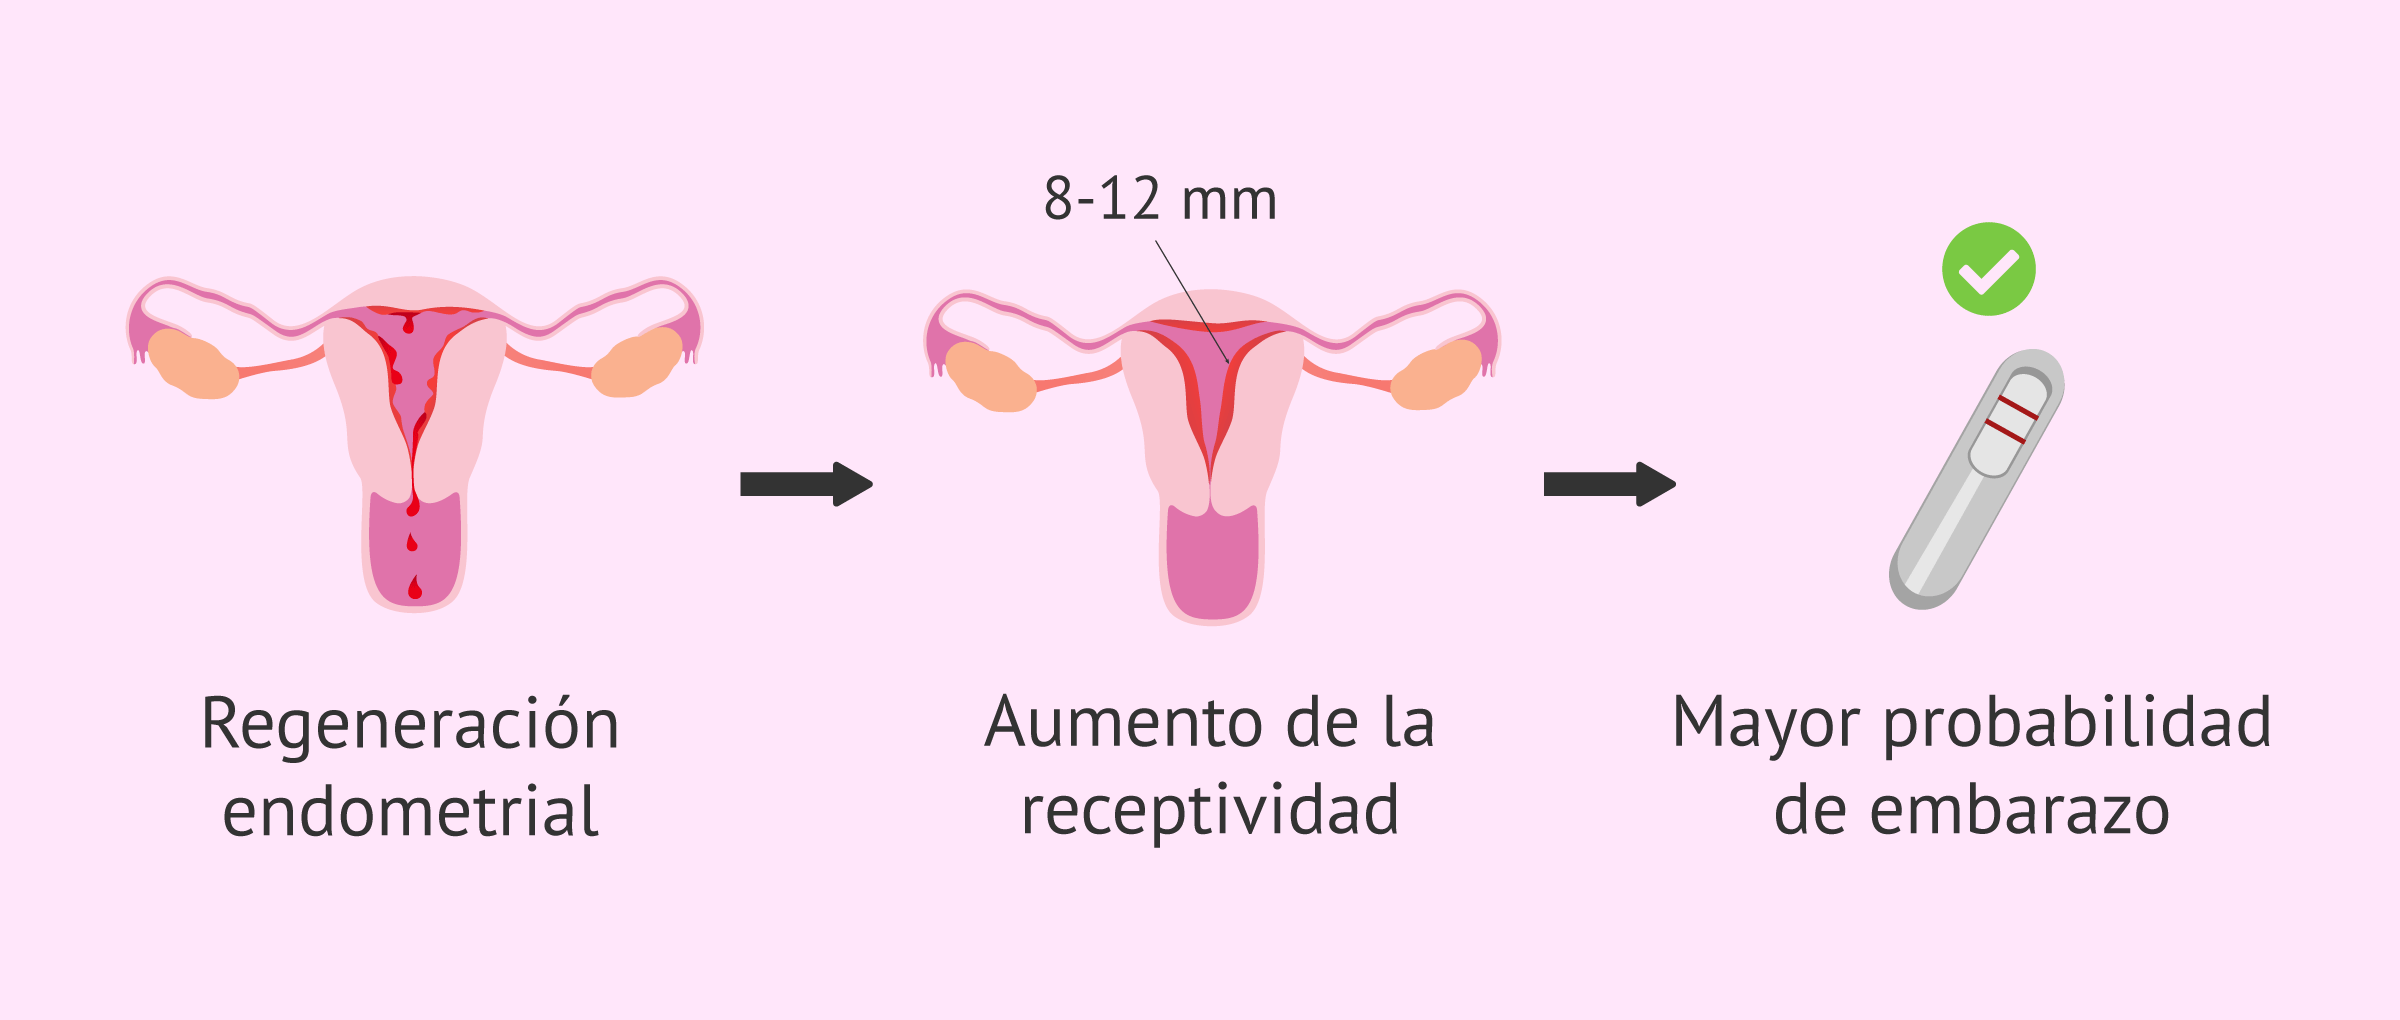 Objetivos del raspado endometrial